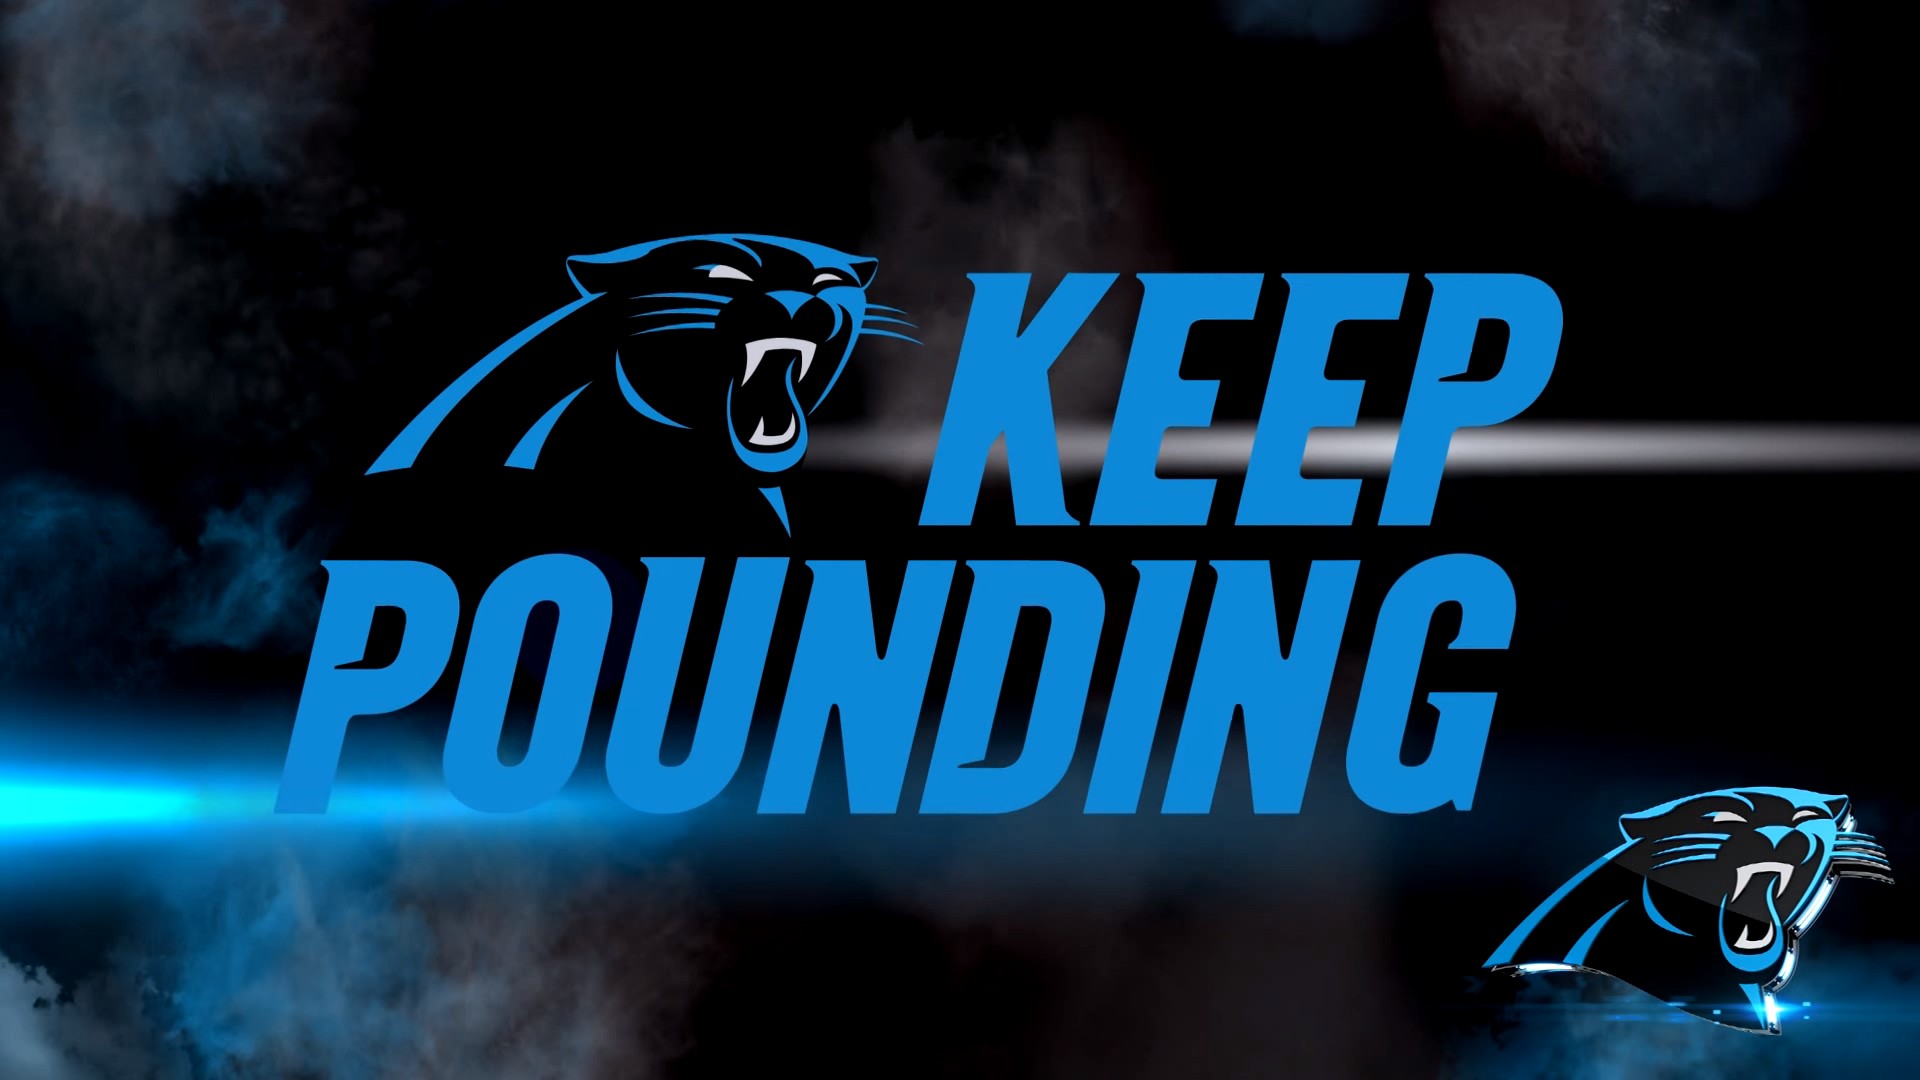 Wallpapers Hd Carolina Panthers - Carolina Panthers Laptop Background , HD Wallpaper & Backgrounds